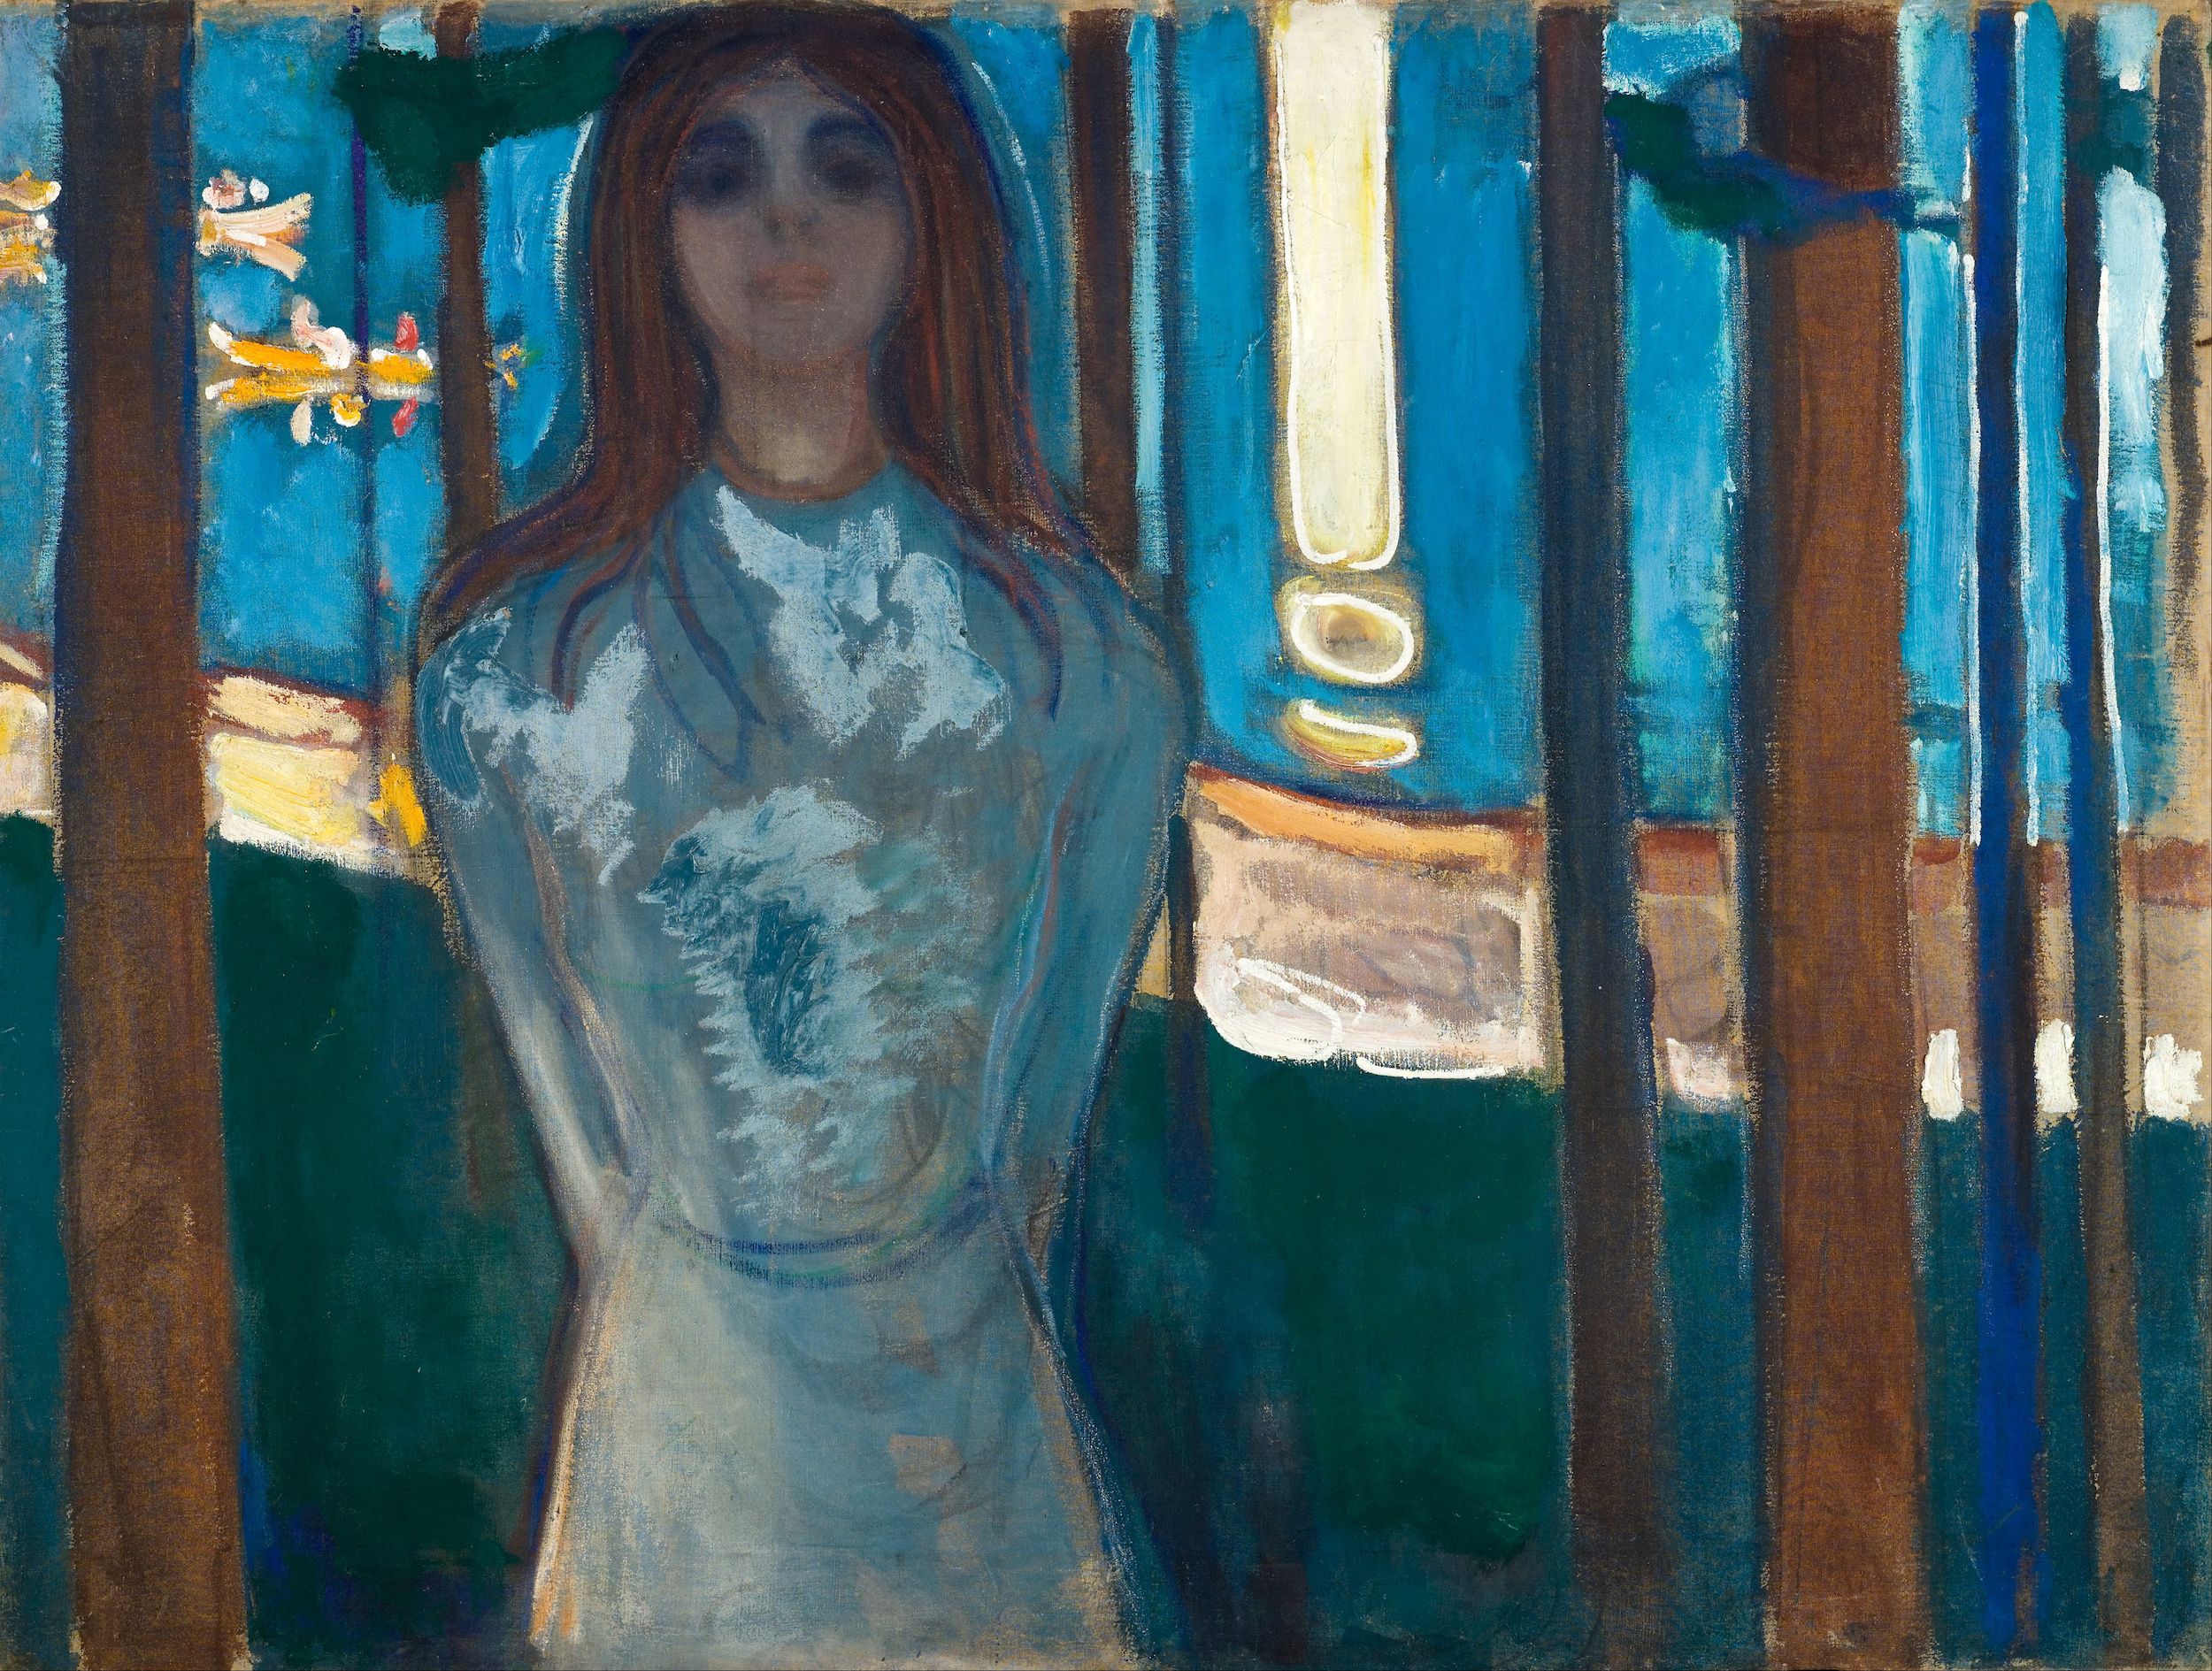 A Voz / Noite de Verão by Edvard Munch - 1896 